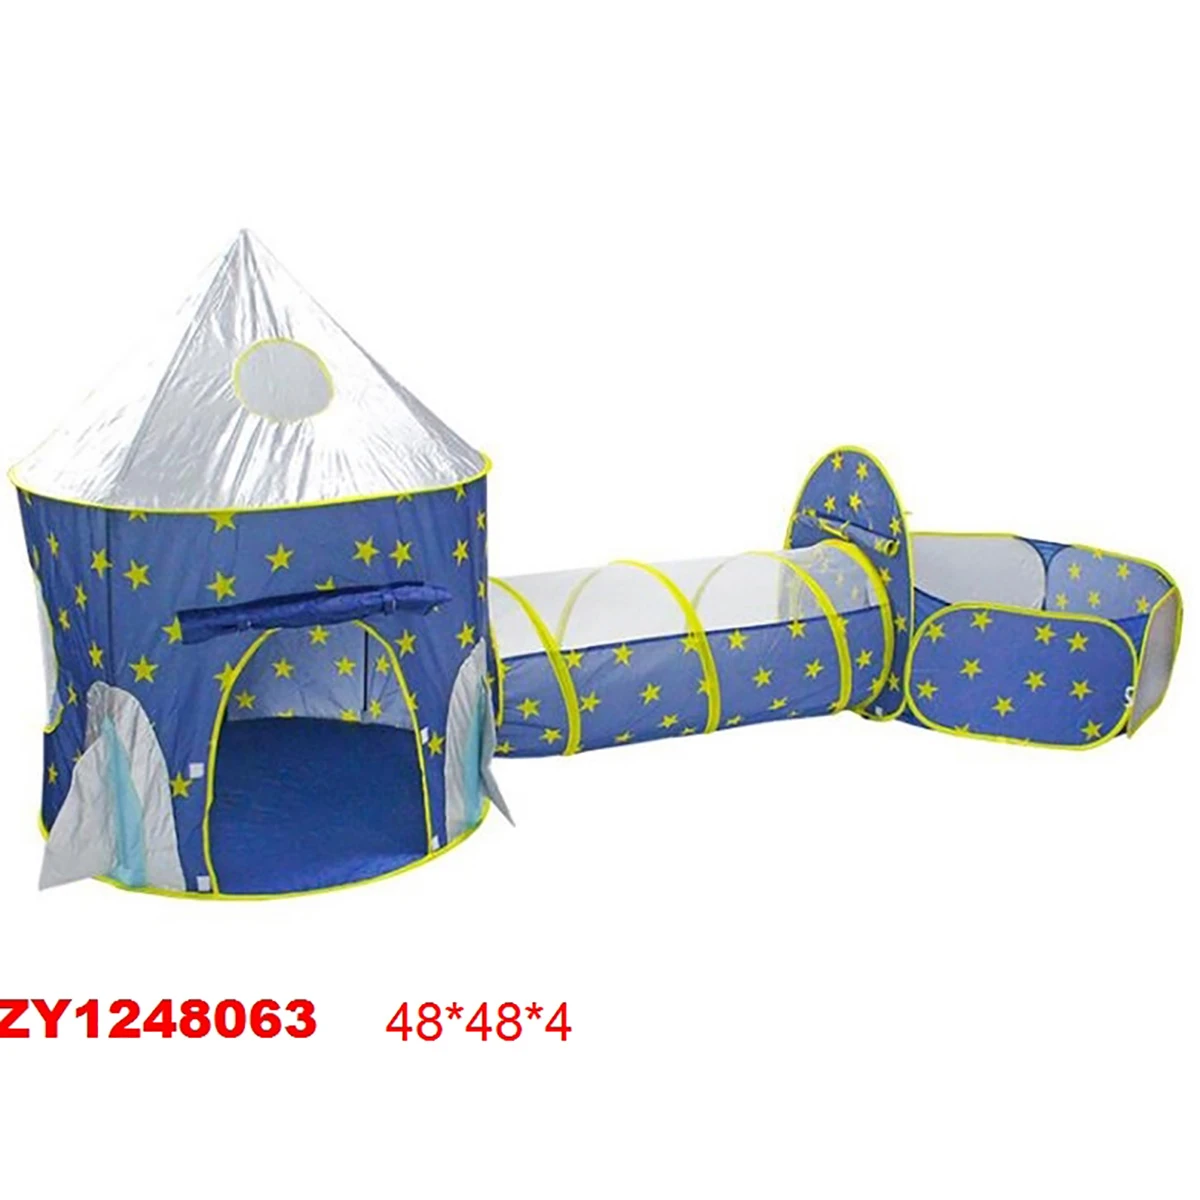 Палатка Звездочёт, 48х48х4, пакет